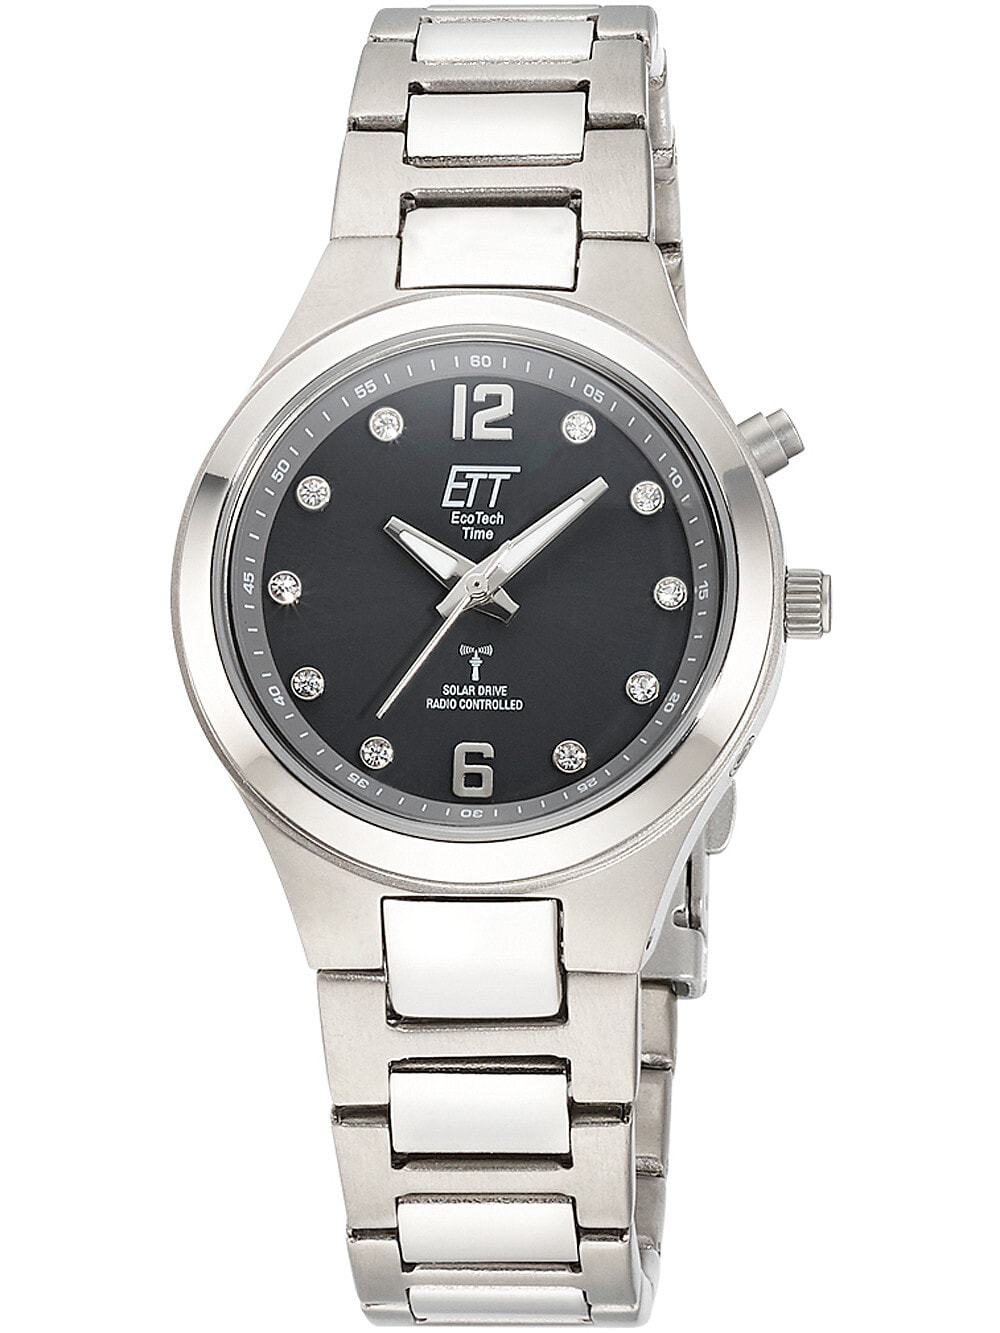 Женские наручные кварцевые часы ETT Eco Tech Time титановый ремешок. Водонепроницаемость-5 АТМ. Прочное, минеральное стекло. Циферблат декорирован цирконием.